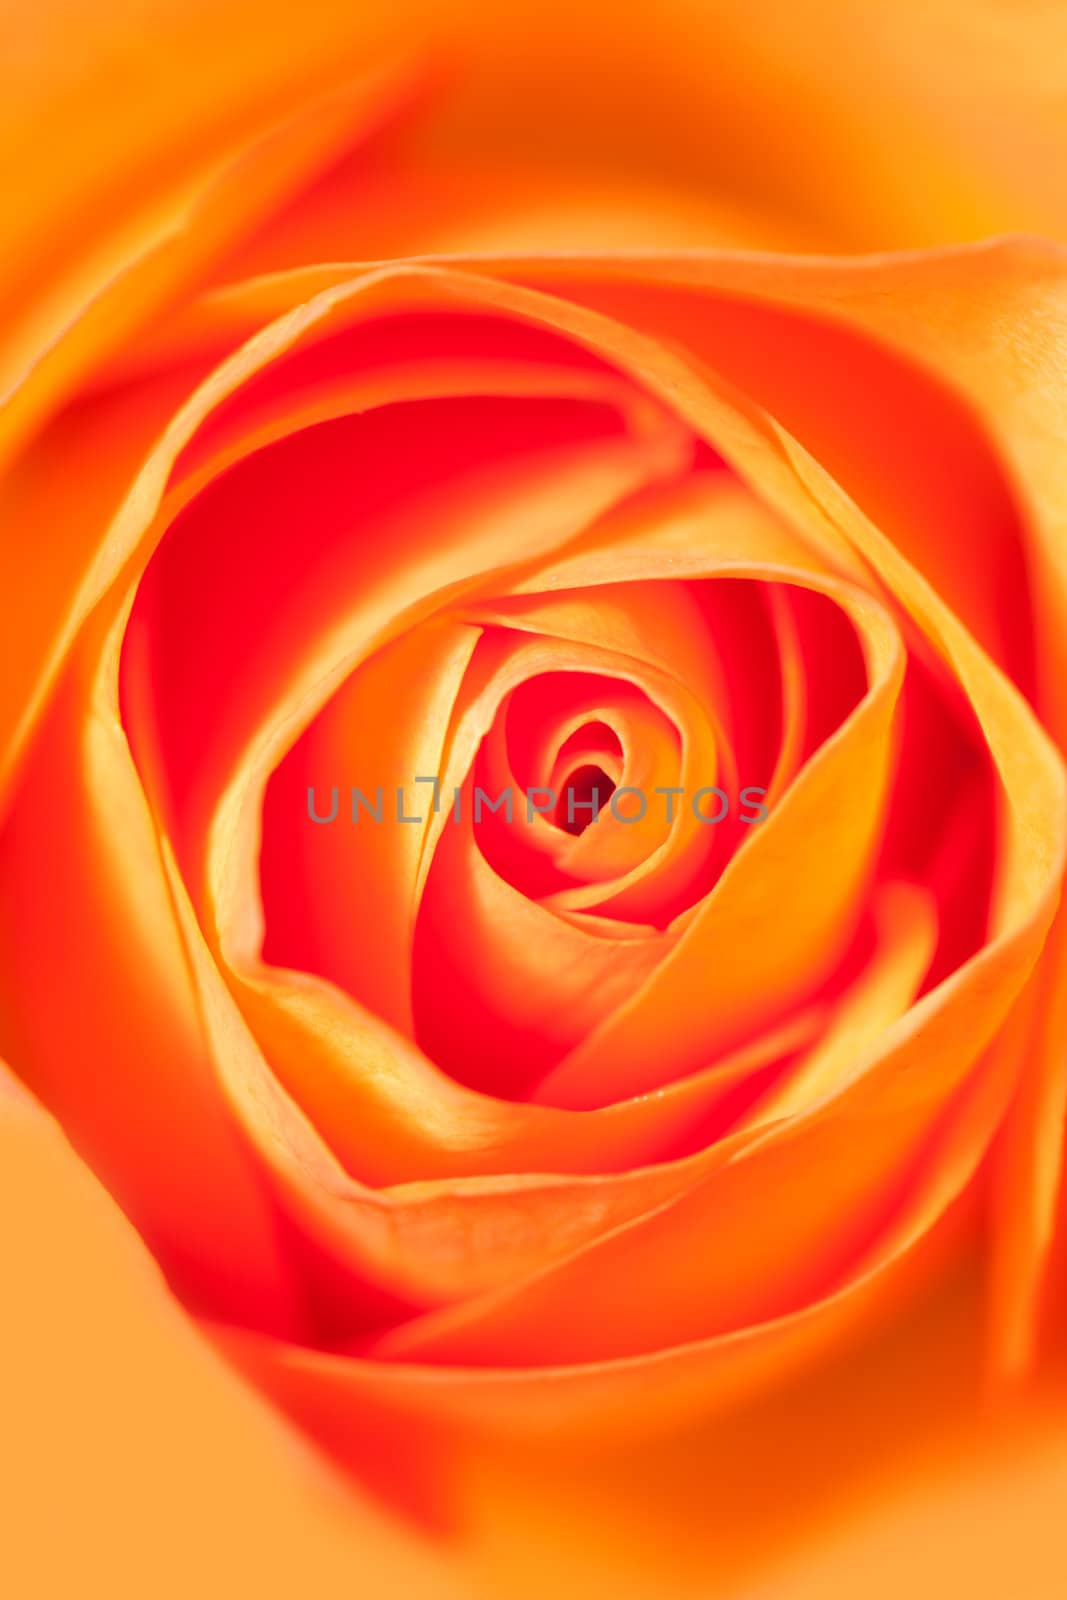 macro background of orange rose